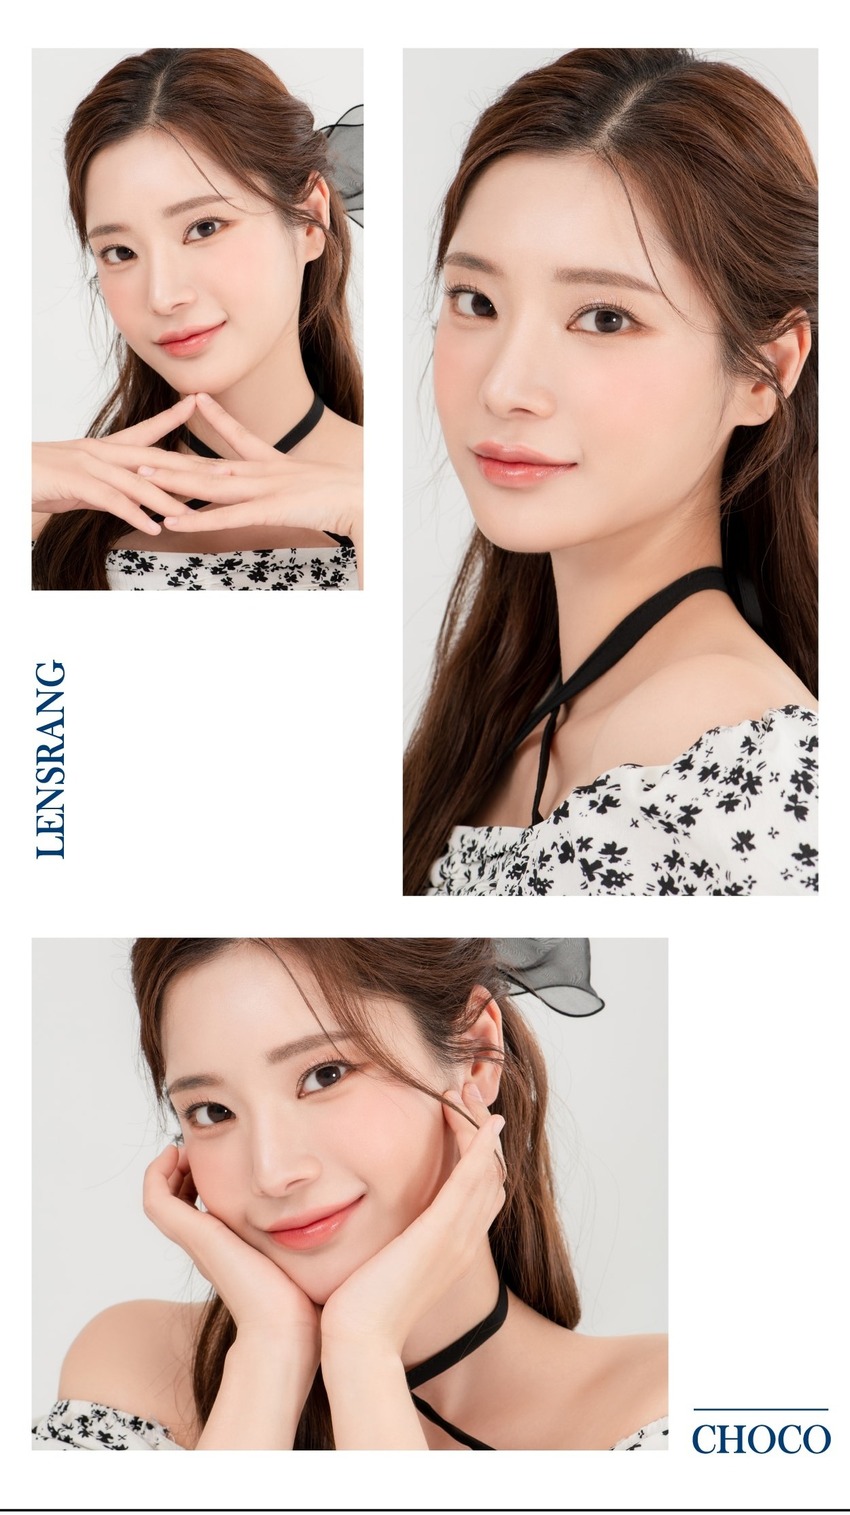 
月刊LensRang Iwwing chocoの韓国のカラコンはチョコレート色で自然な肌色に見える。